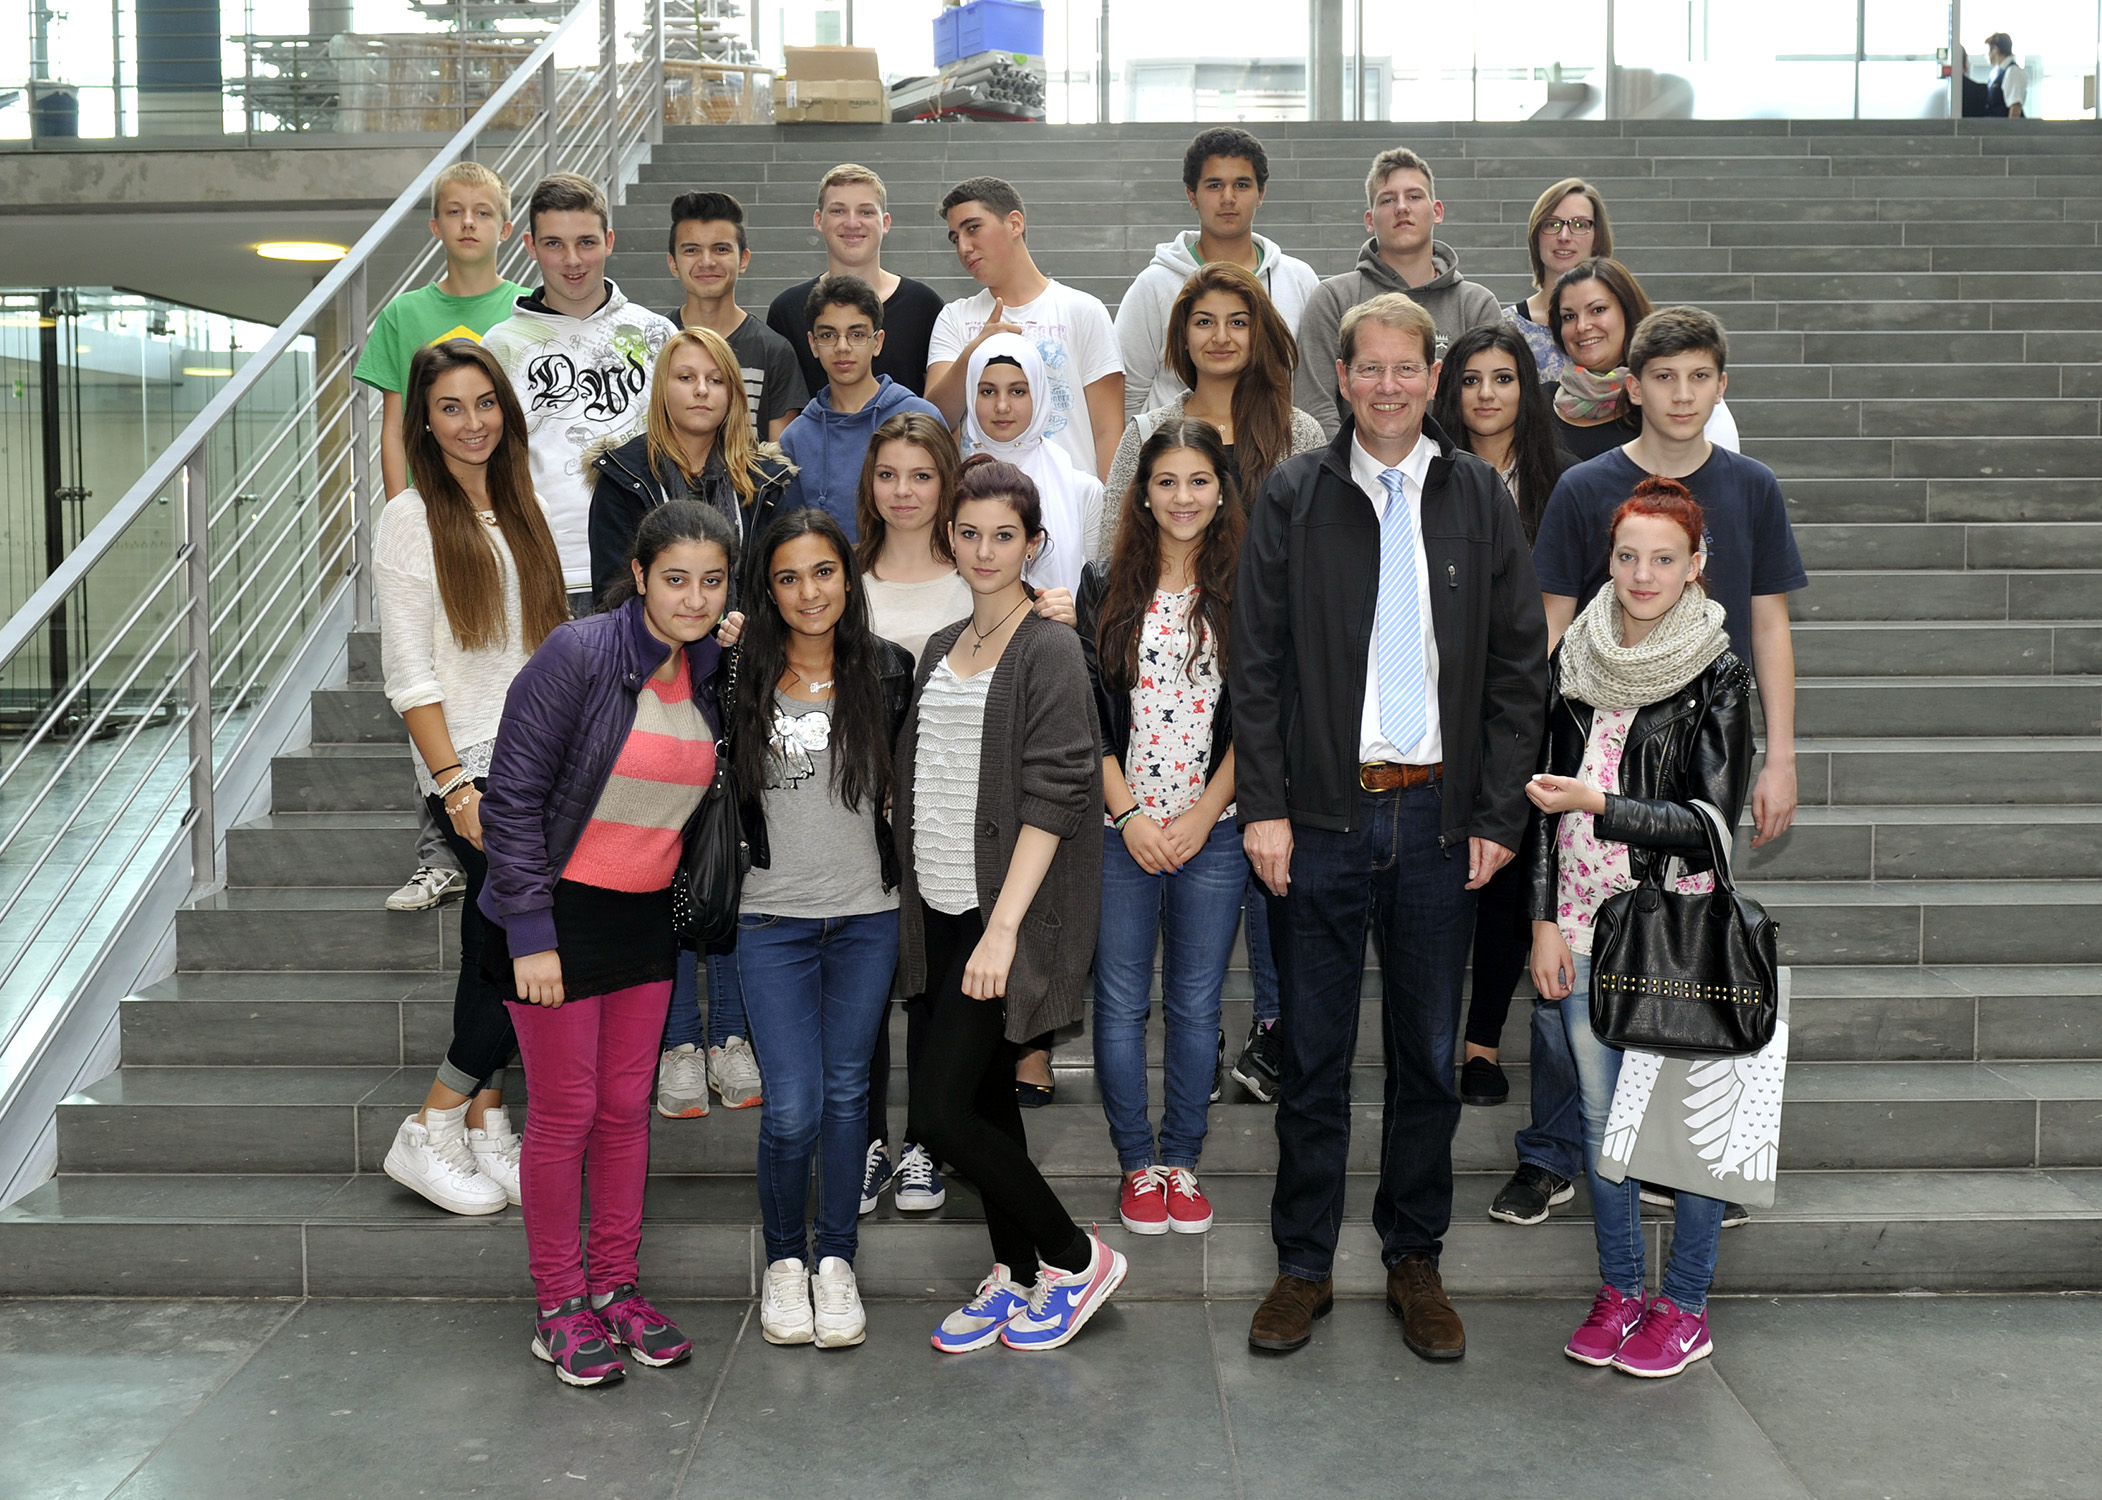 Schülerinnen und Schüler der Gemeinschaftsschule Friedrichsgabe Norderstedt zu Besuch bei Gero Storjohann MdB in Berlin.